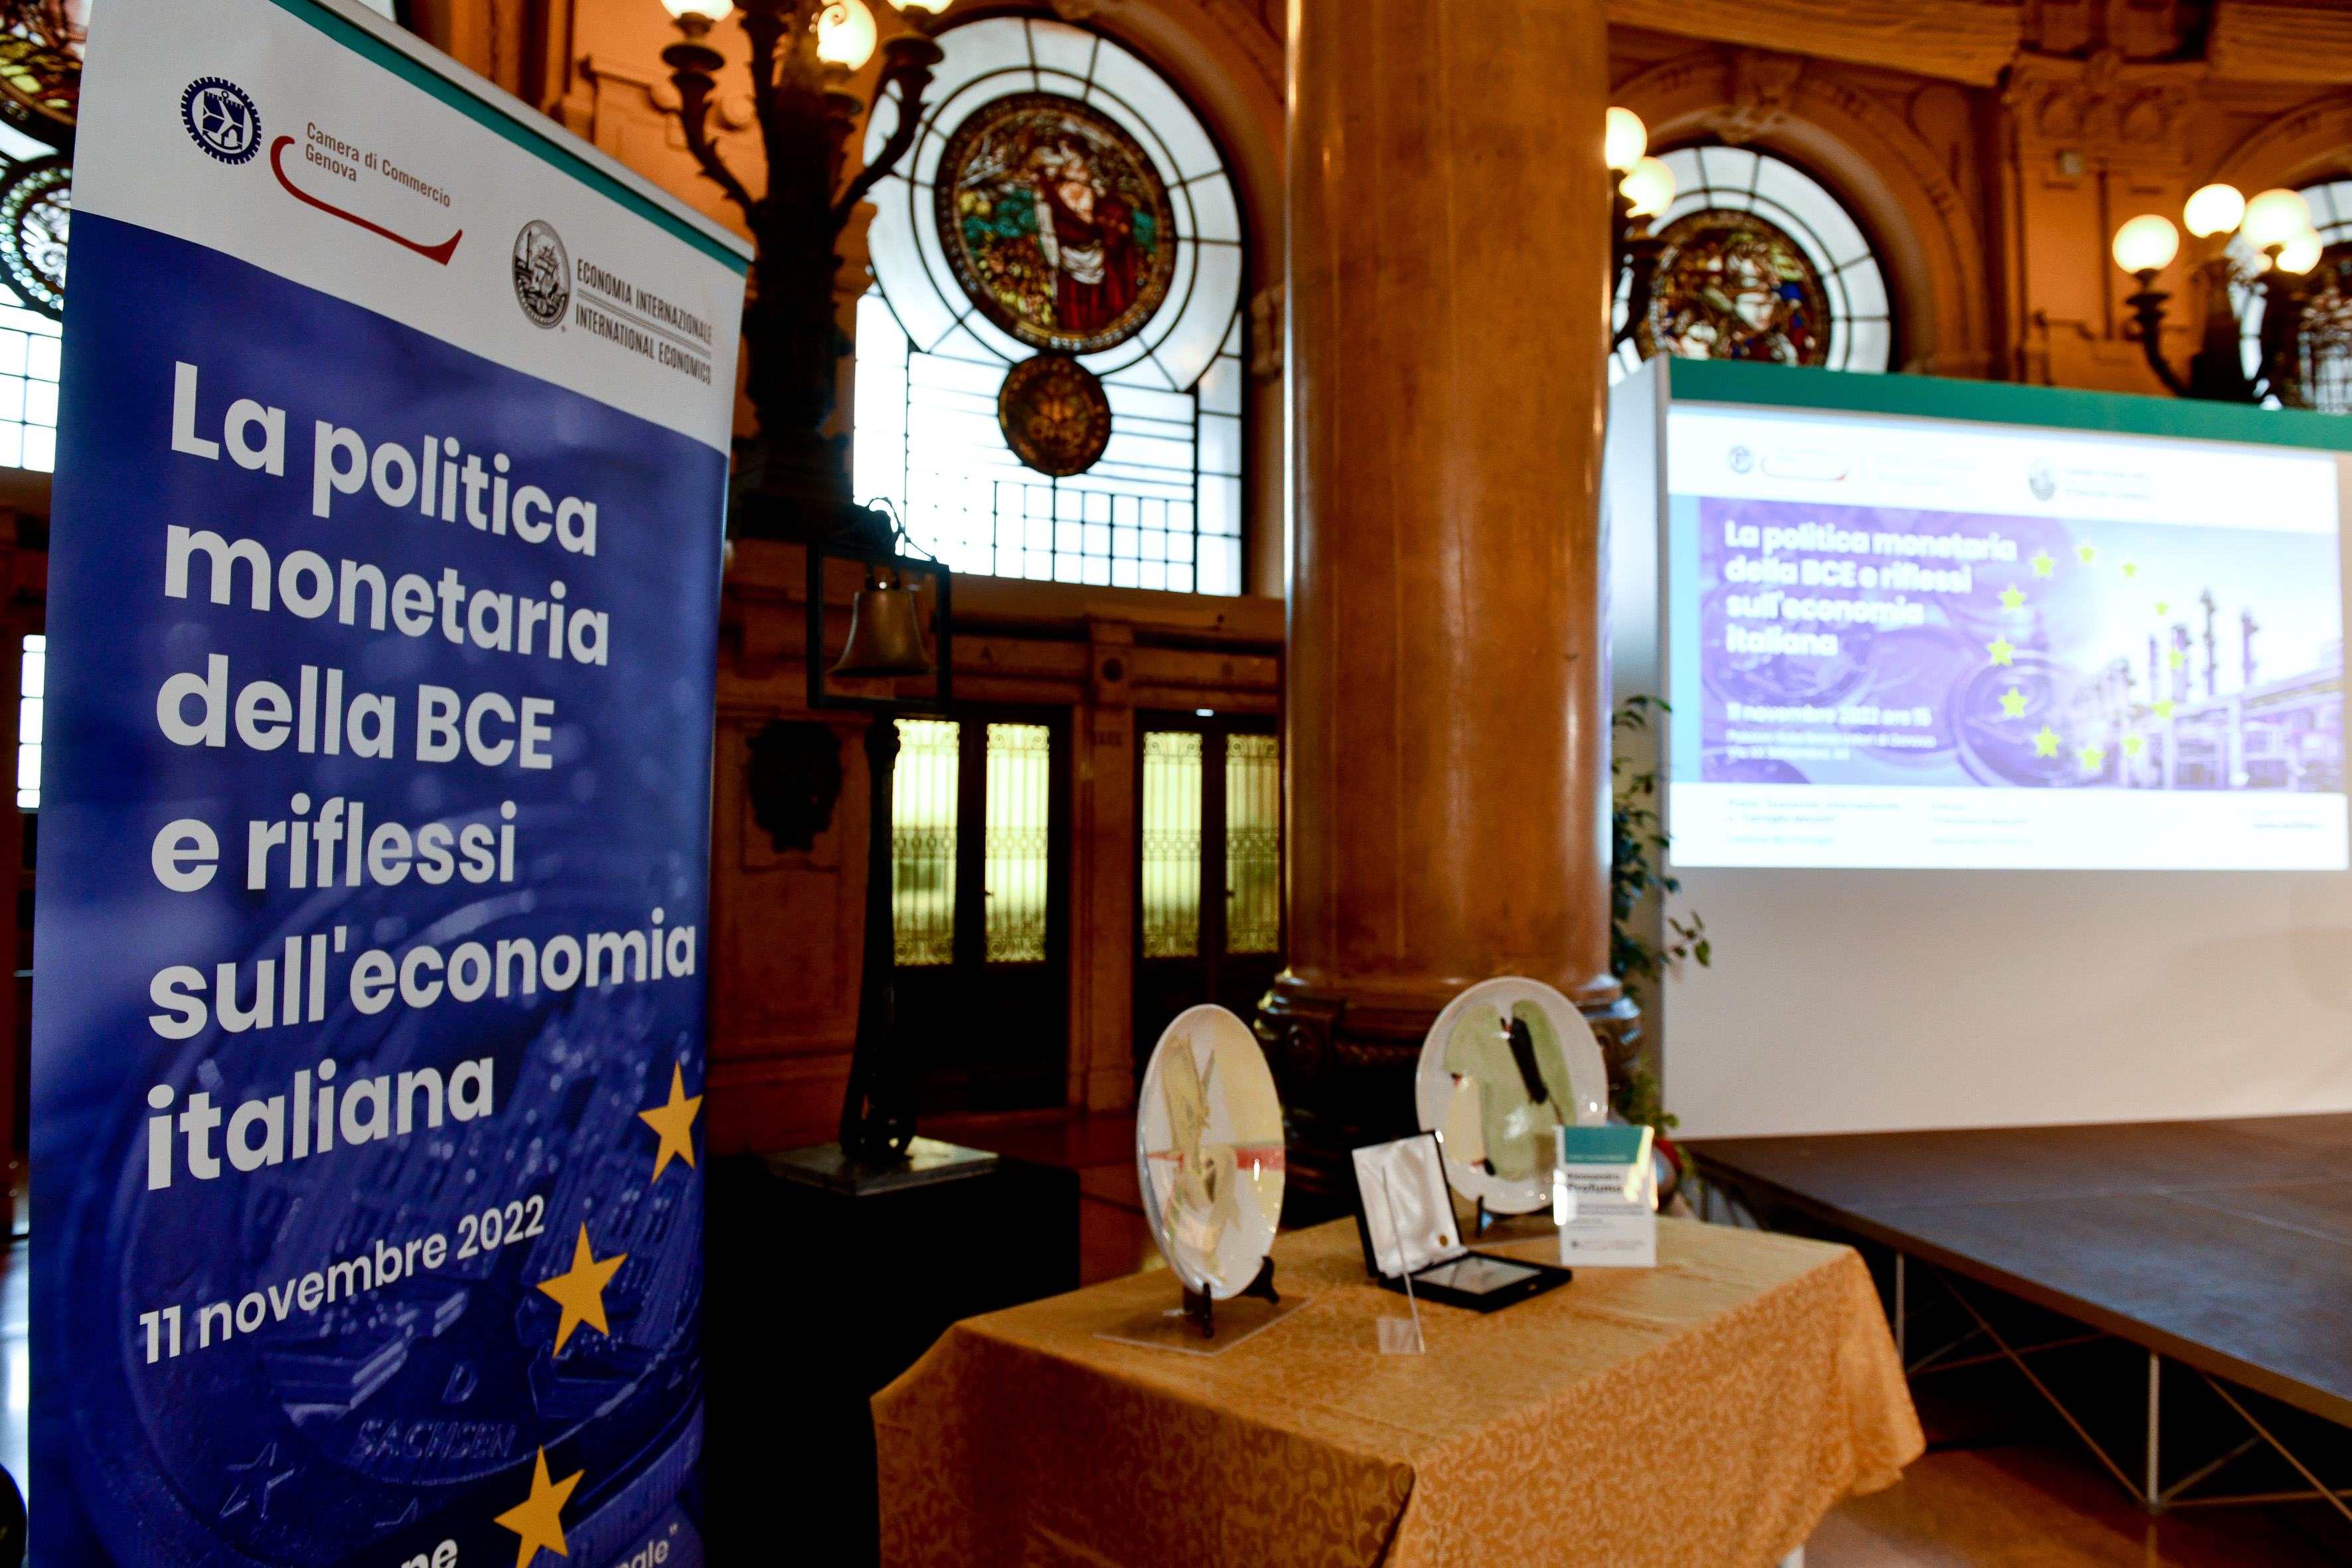 Evento annuale "La politica monetaria della BCE e riflessi sull'economia italiana", Borsa Valori 11 novembre 2022 - Assegnazione premi camerali "Economia Internazionale" e "Francesco Manzitti"